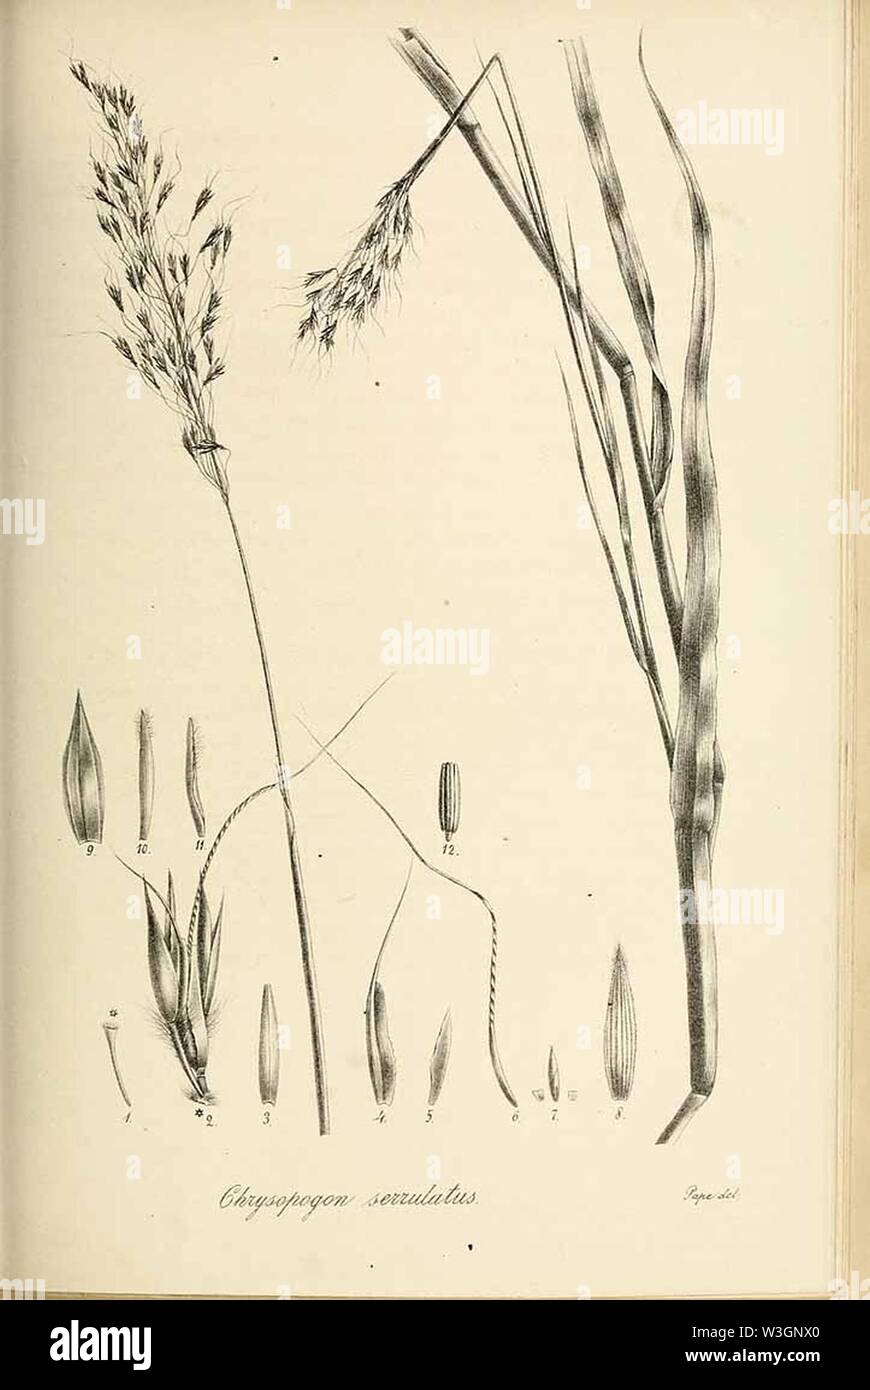 Chrysopogon serrulatus - Species graminum - Volume 3. Stock Photo